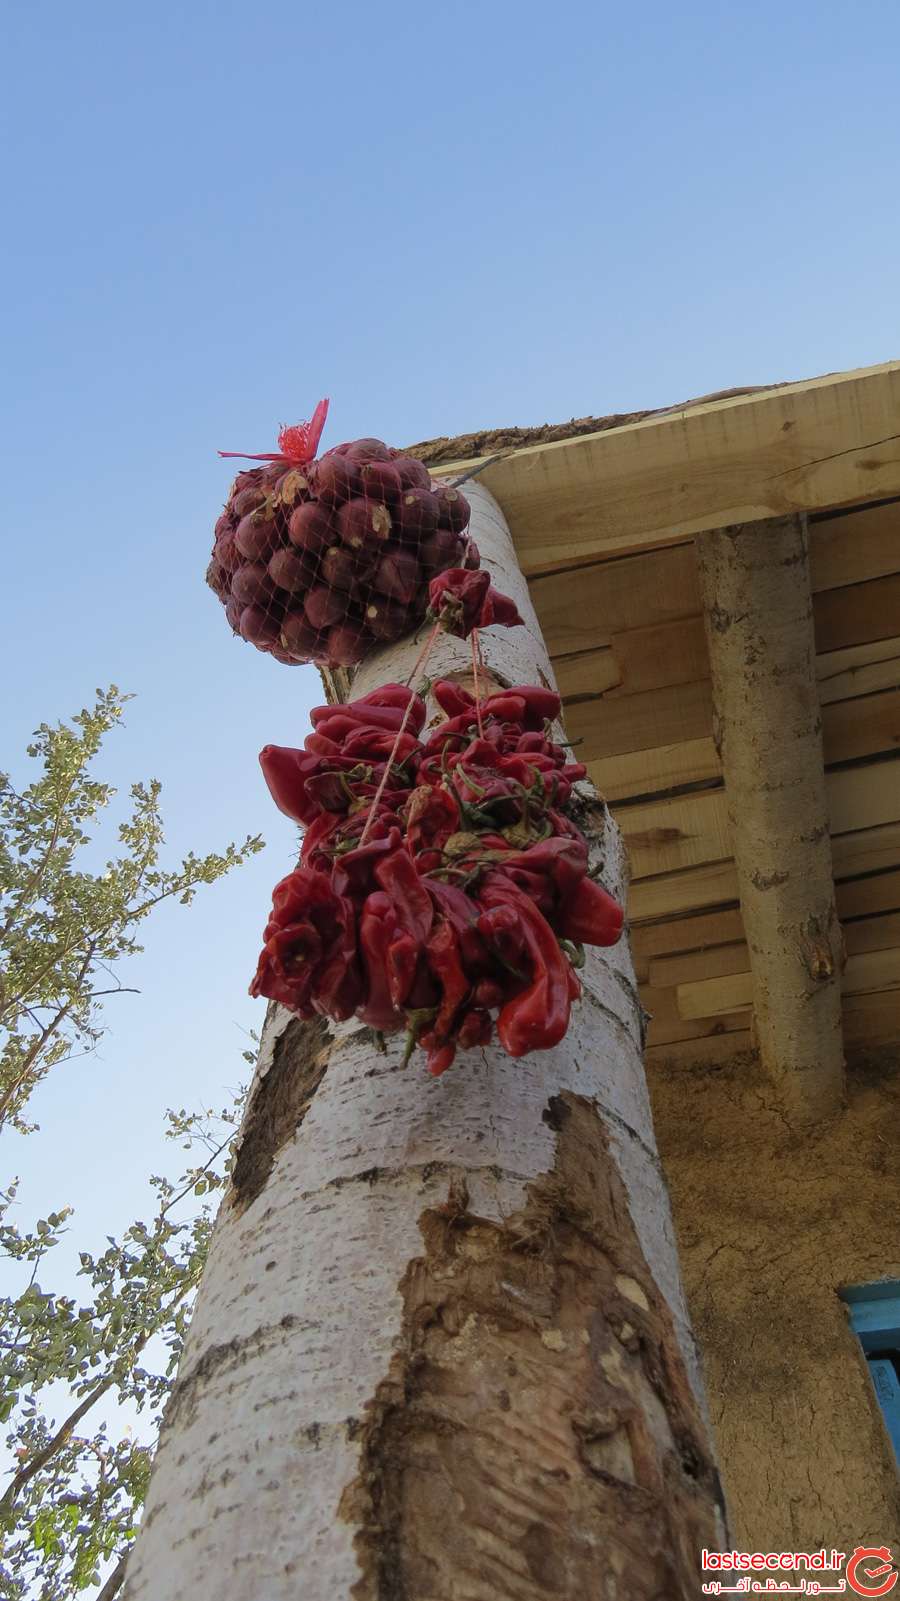  جشن انگور  در ارومیه   